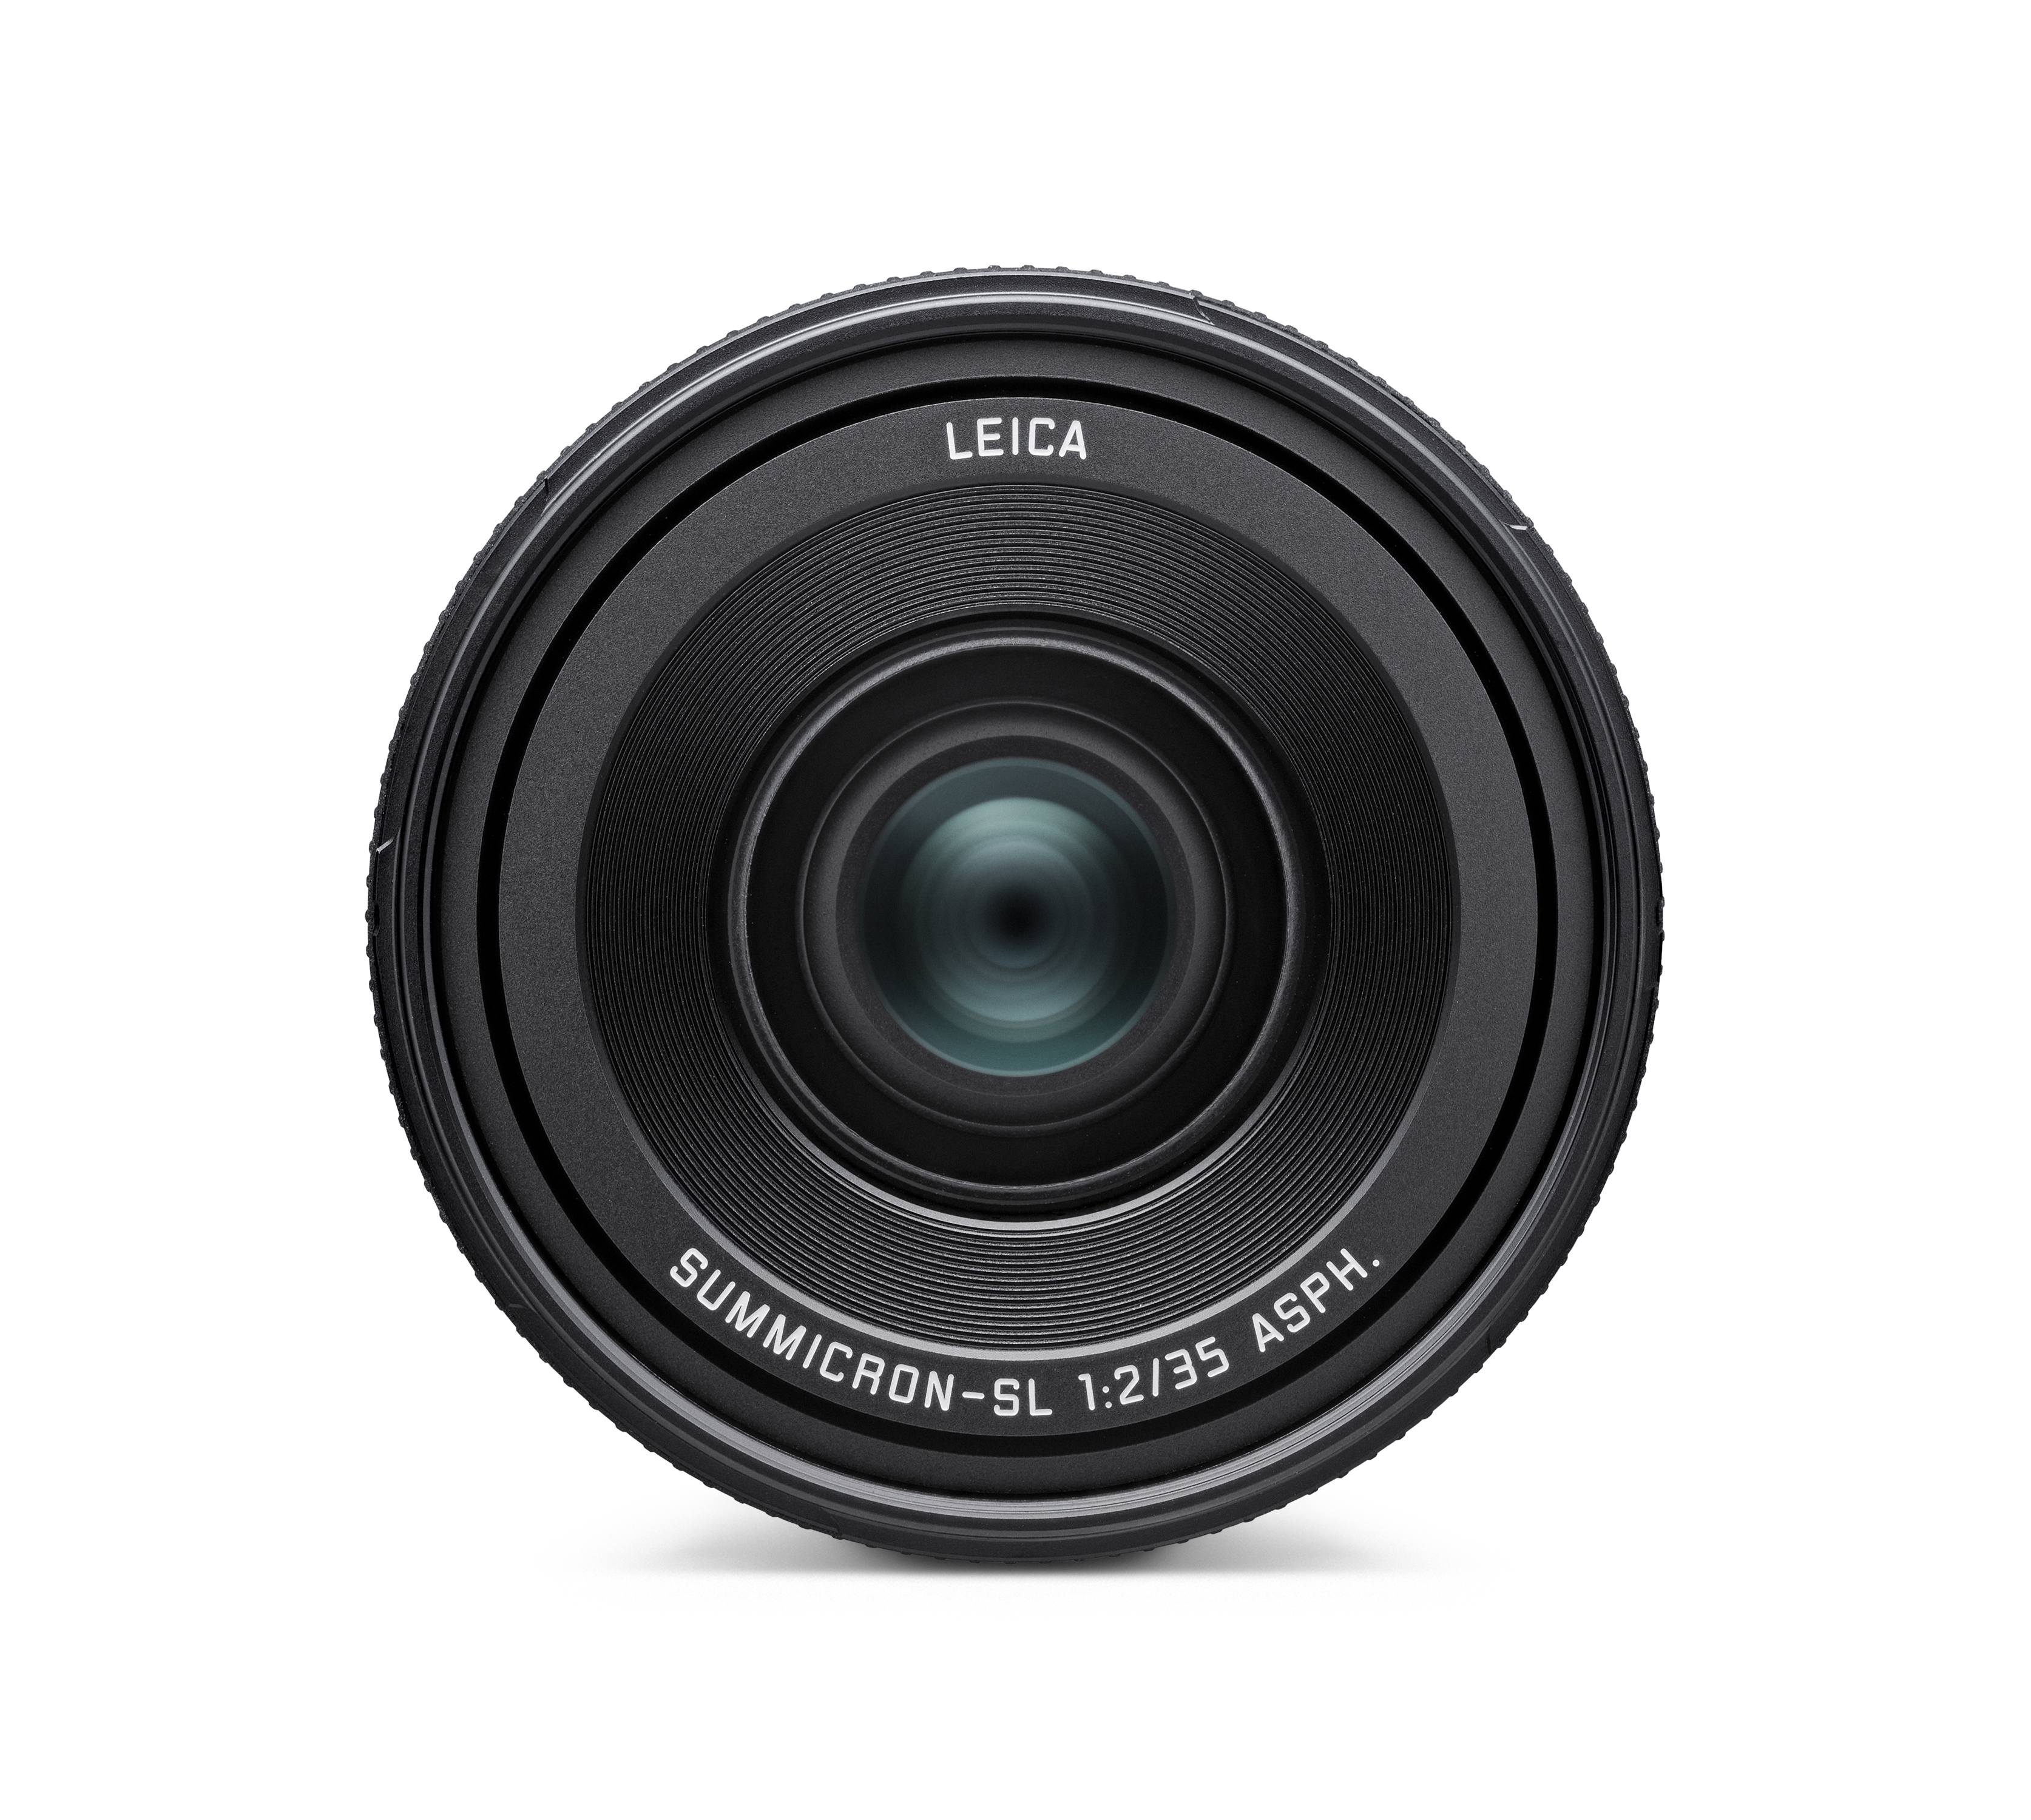 Leica Summicron-SL 1:2/35 ASPH.